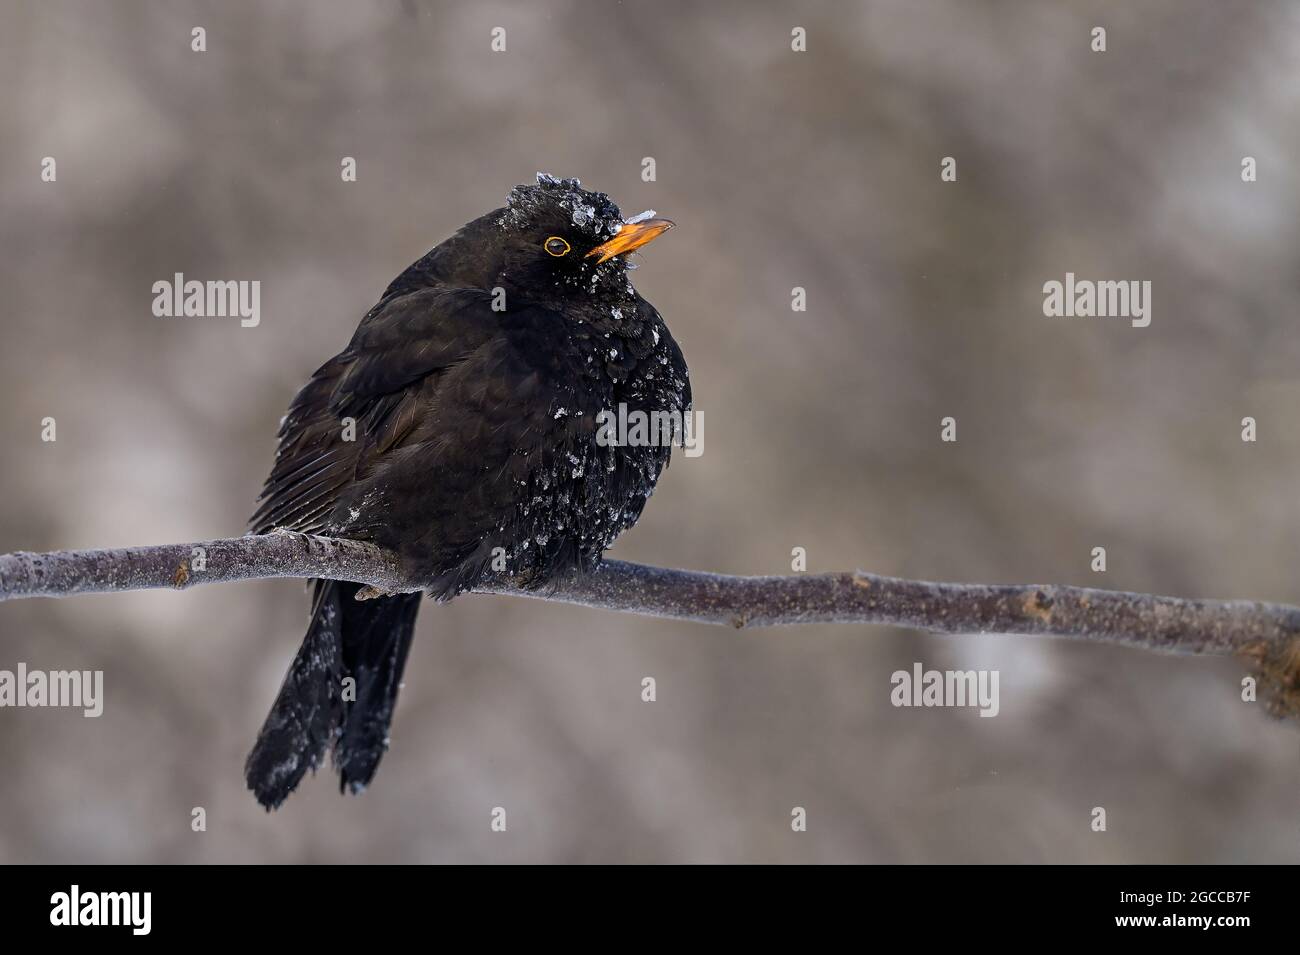 ¿Está frío ahí fuera? La respuesta de este Blackbird podría ser: No...it's helando frío por aquí! Foto de stock